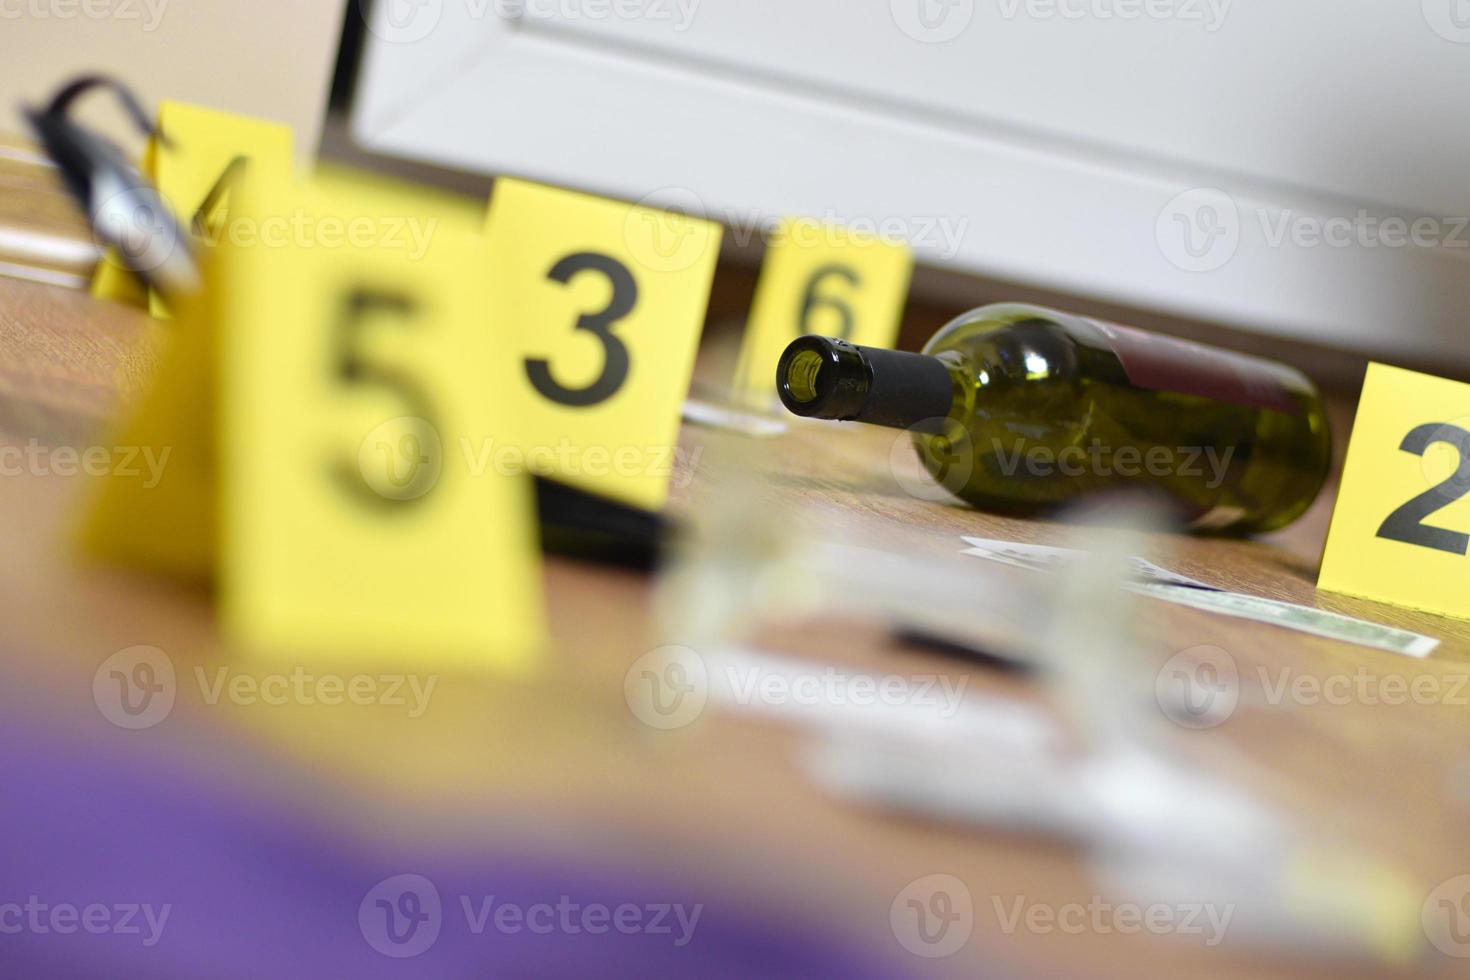 rotto bicchiere e bottiglia di vino segnato come prova durante crimine scena indagine. molti giallo marcatori con numeri foto